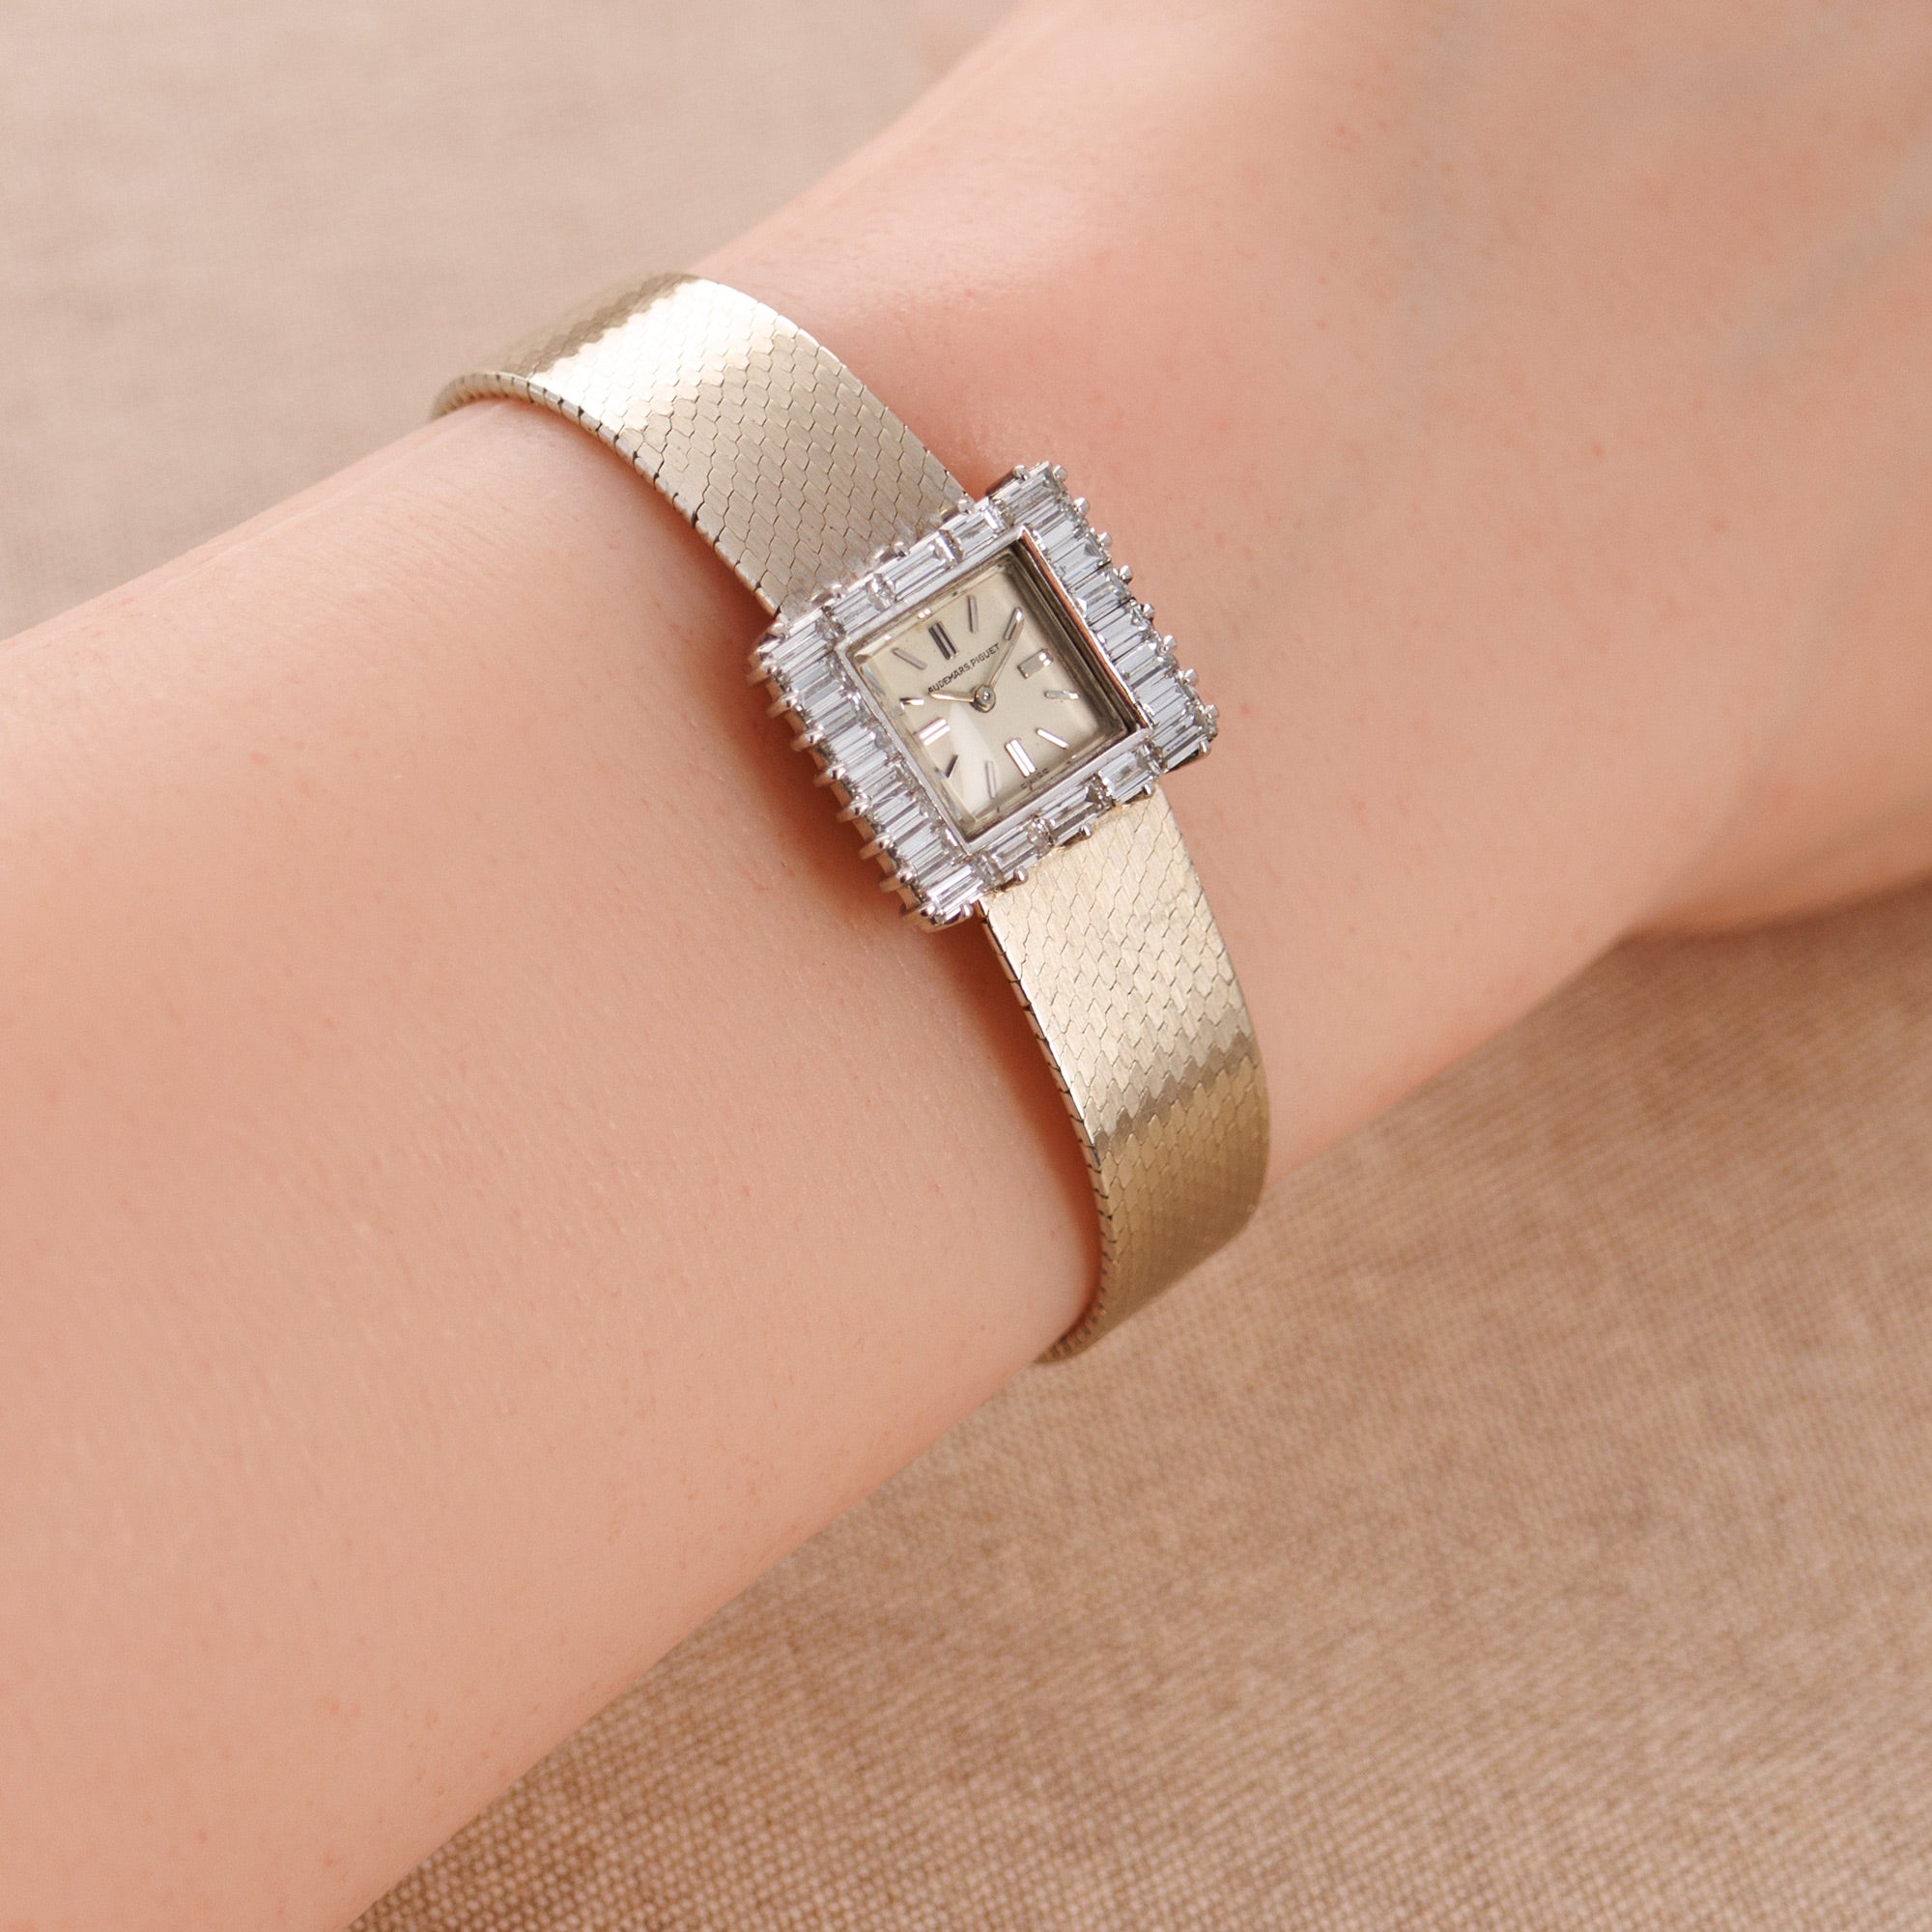 Audemars Piguet White Gold and Baguette Diamond Watch